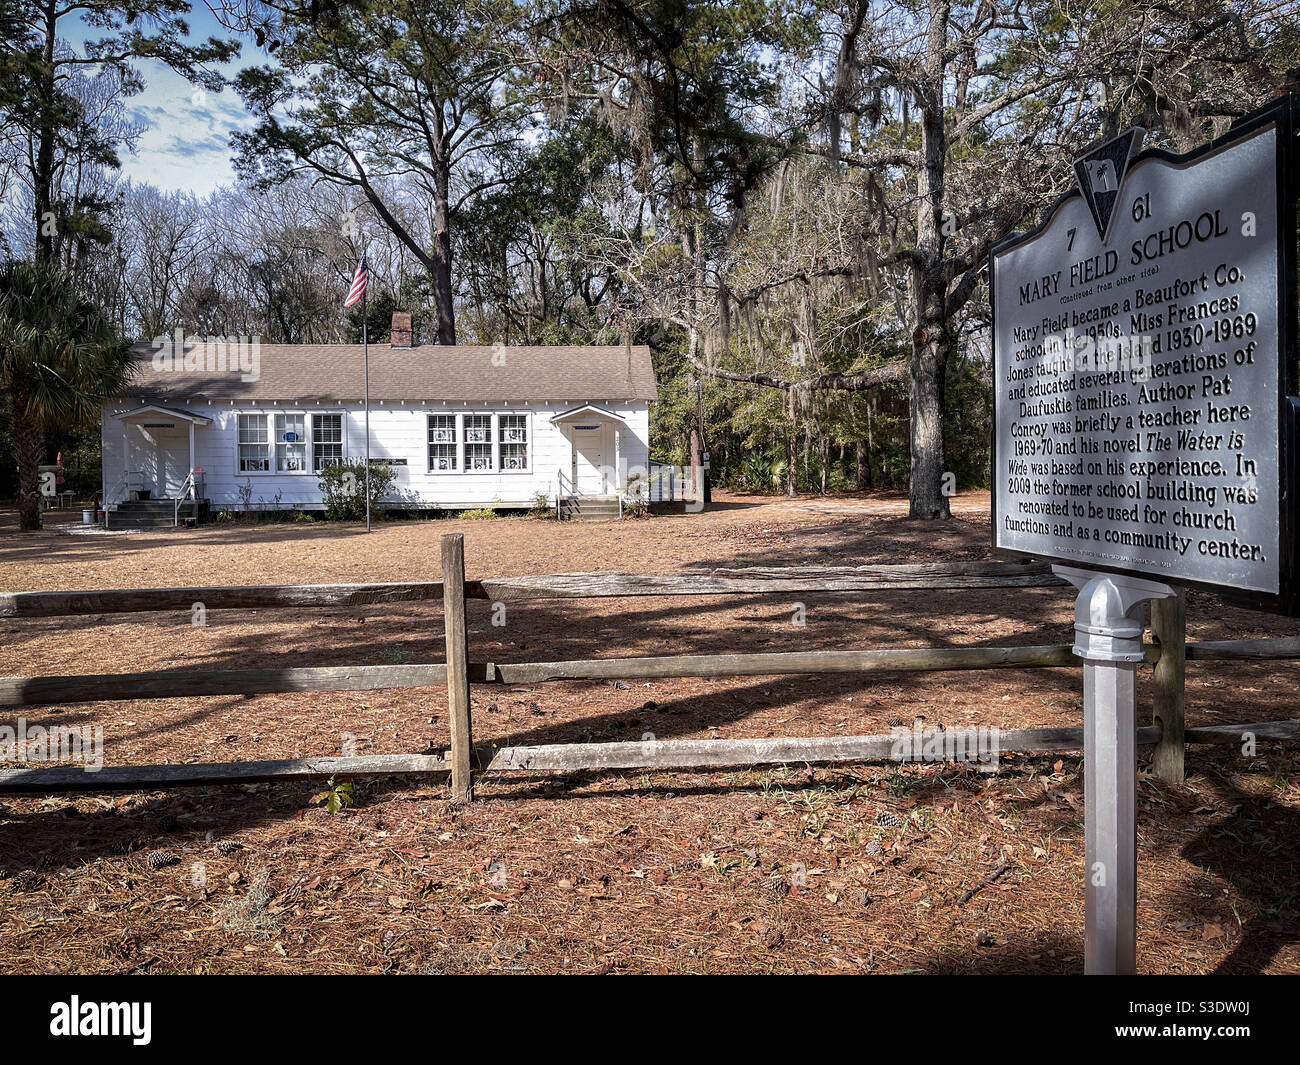 Mary Field School, wo der Autor Pat Conroy lehrte und schrieb sein Buch "das Wasser ist breit" basierend auf seiner Erfahrung auf Daufuskie Island in South Carolina. Stockfoto